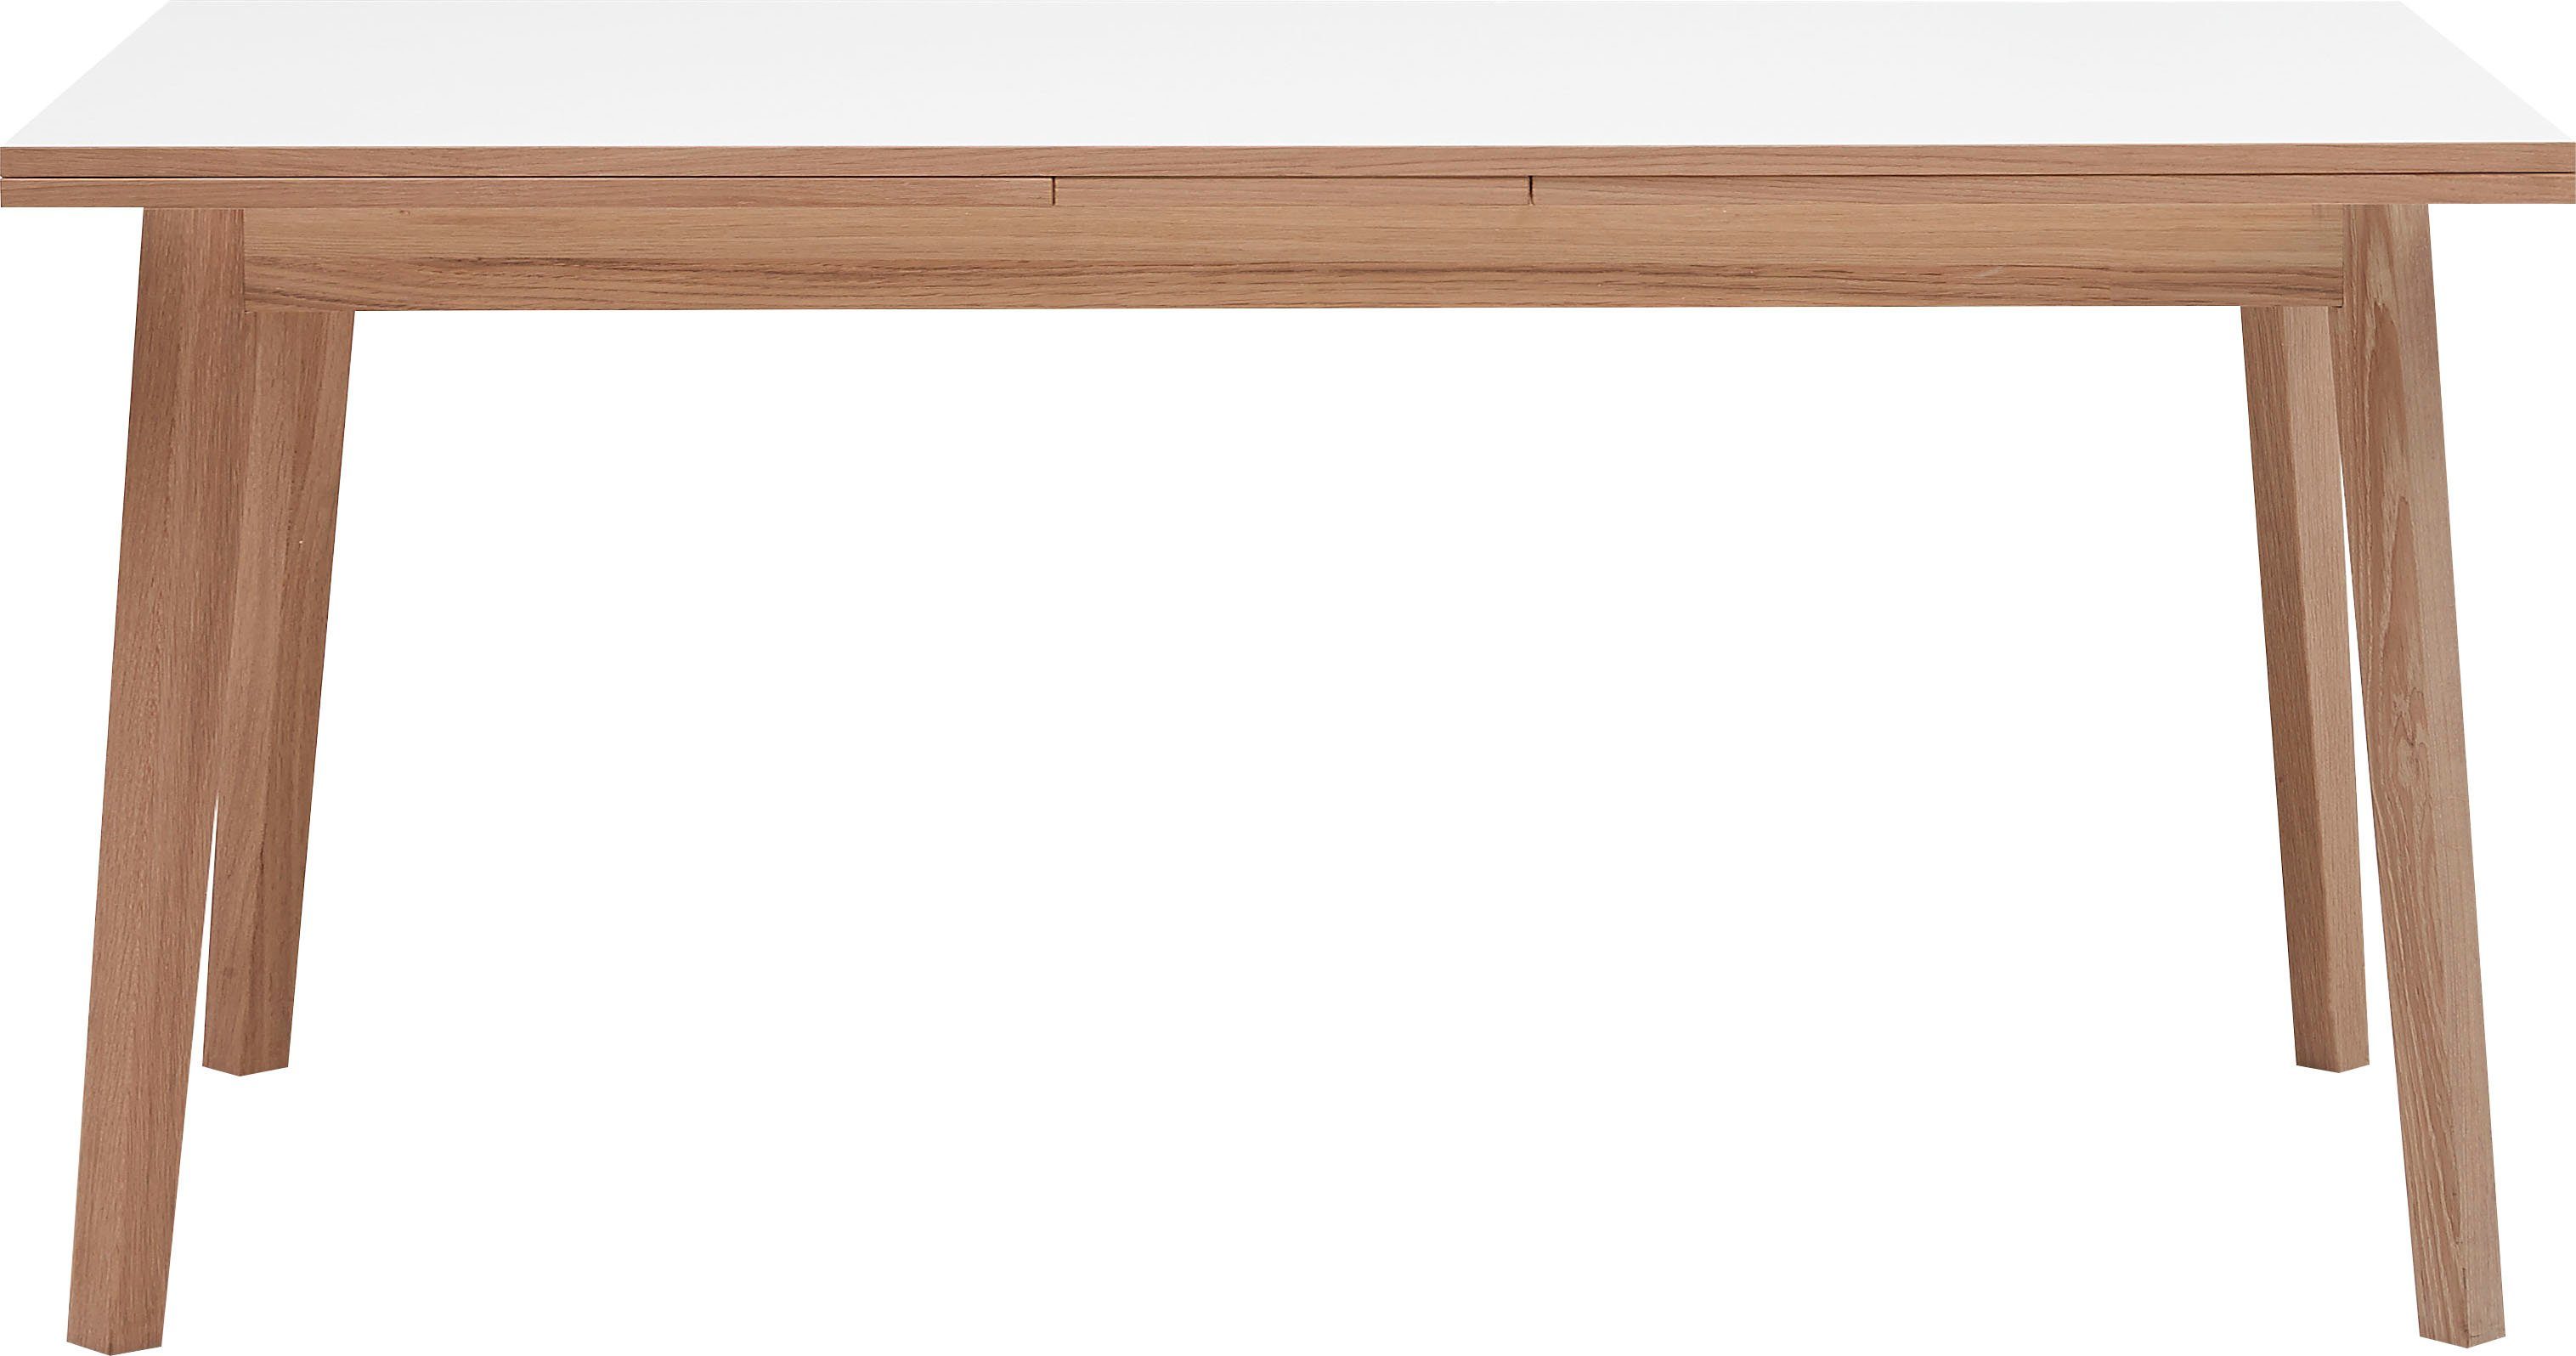 Hammel Furniture Esstisch Basic by Hammel Single, 120(220)x80 cm,  Tischplatte aus Melamin und Gestell in Massivholz